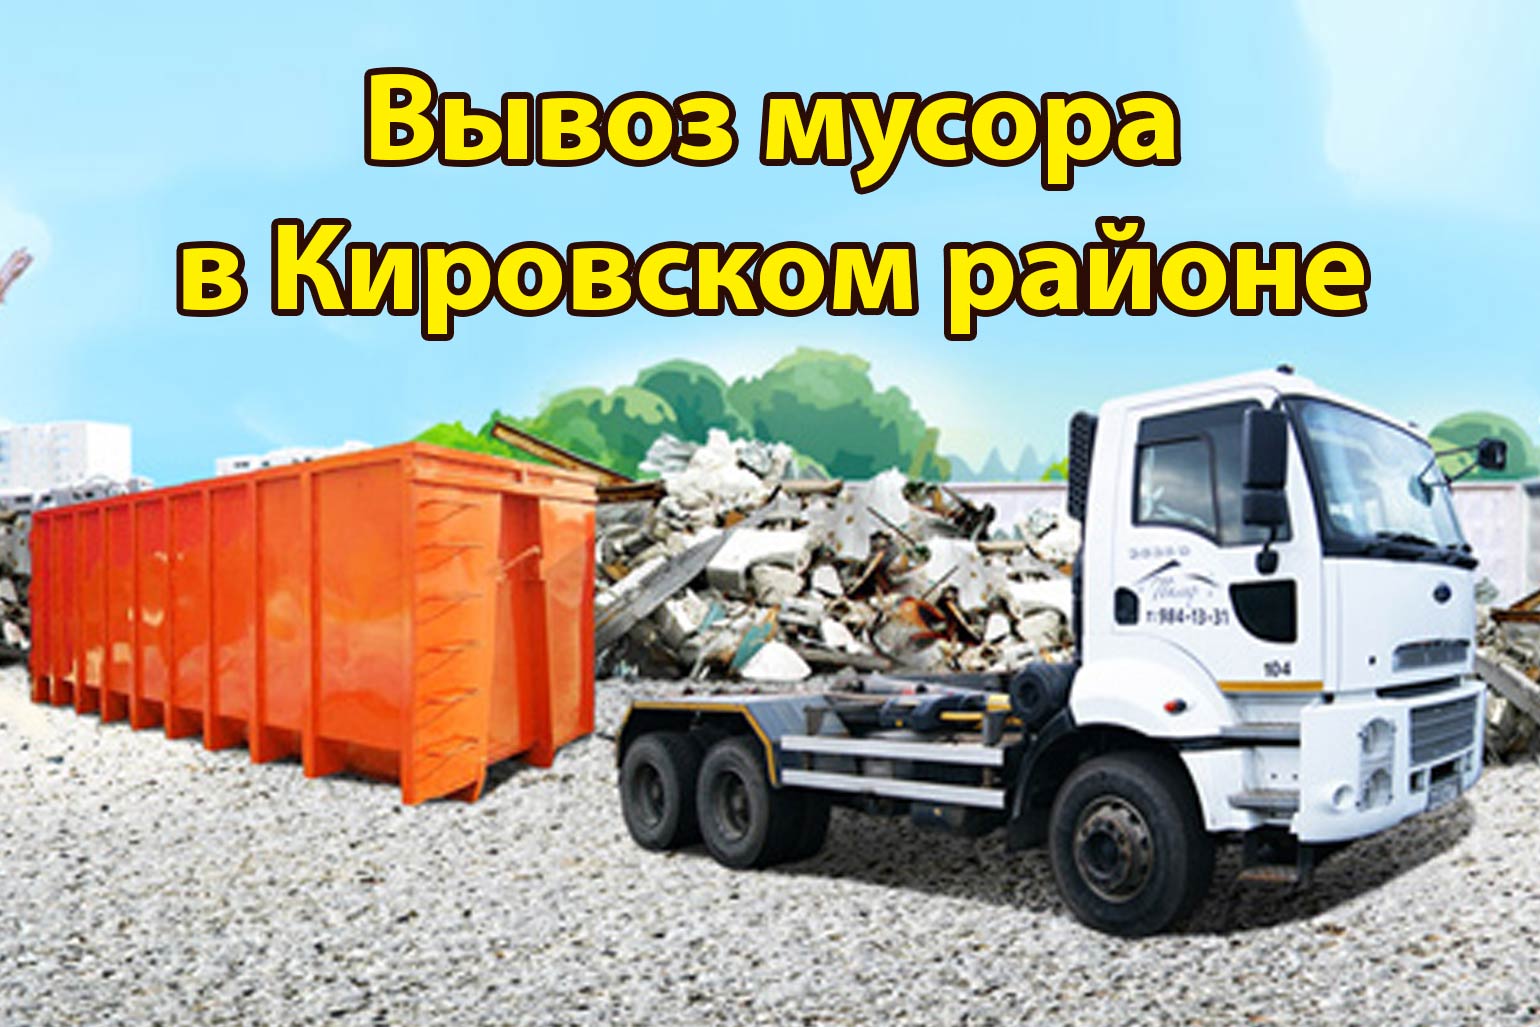 вывоз мусора в кировском районе